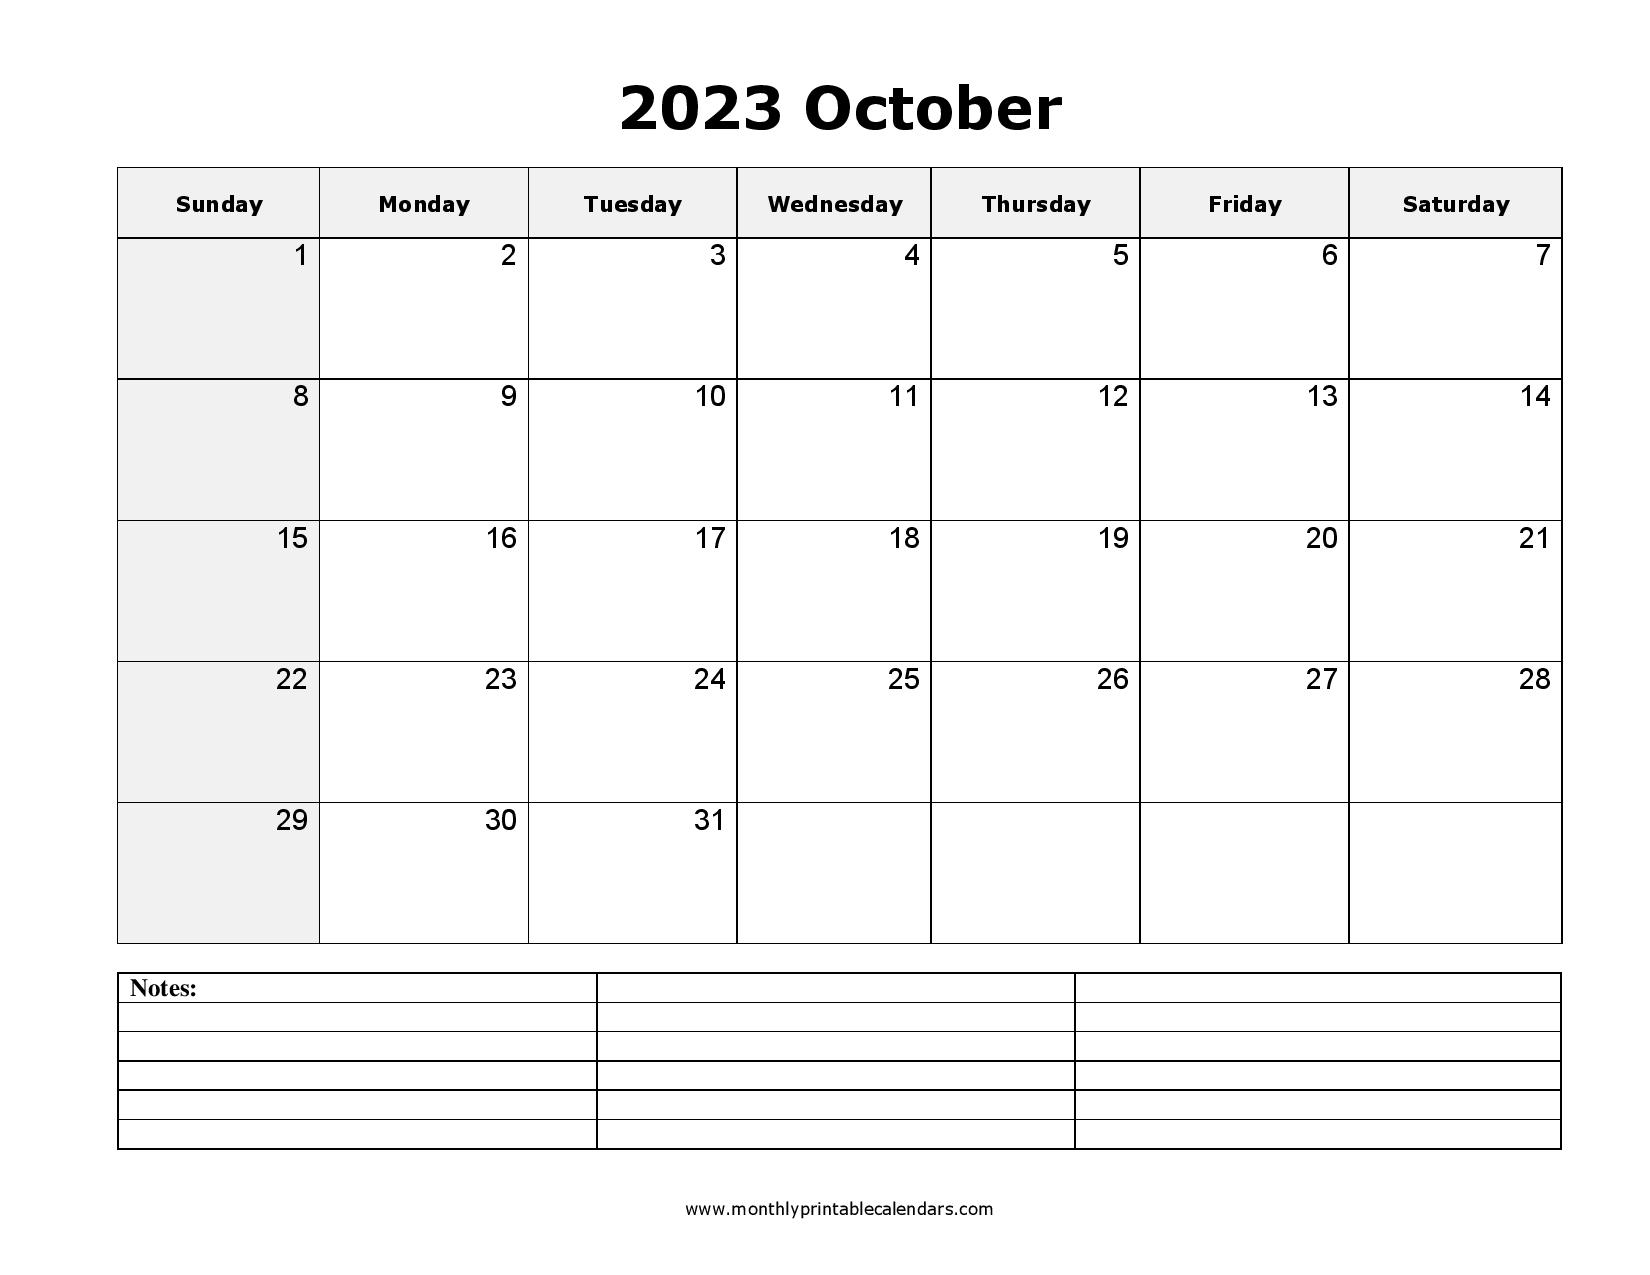 October 2023 Calendar Printable Templates